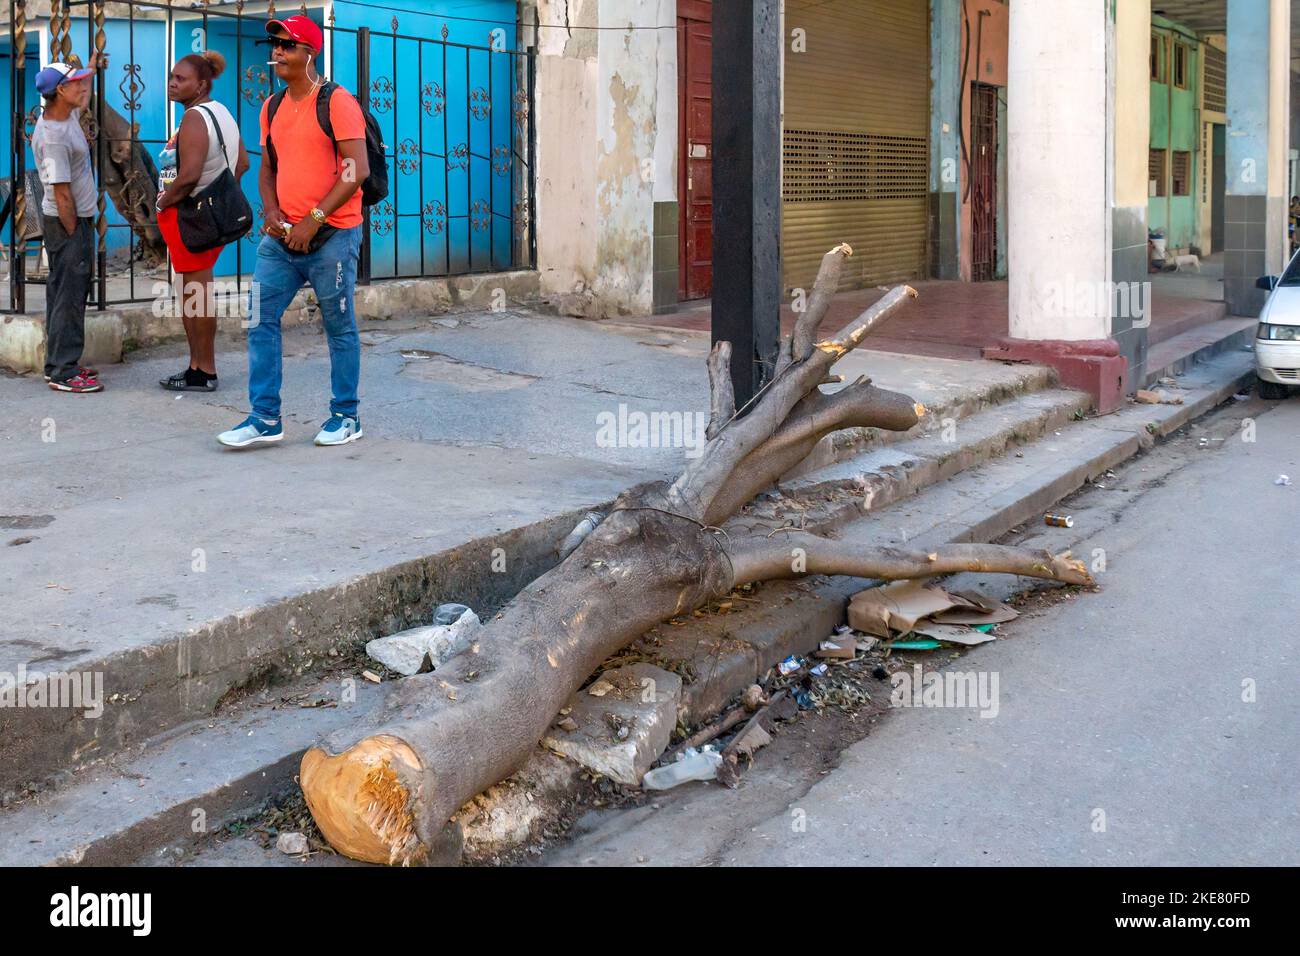 El pueblo cubano camina en una sucia acera donde un tronco de árbol todavía está colocado en la frontera de la calle Foto de stock